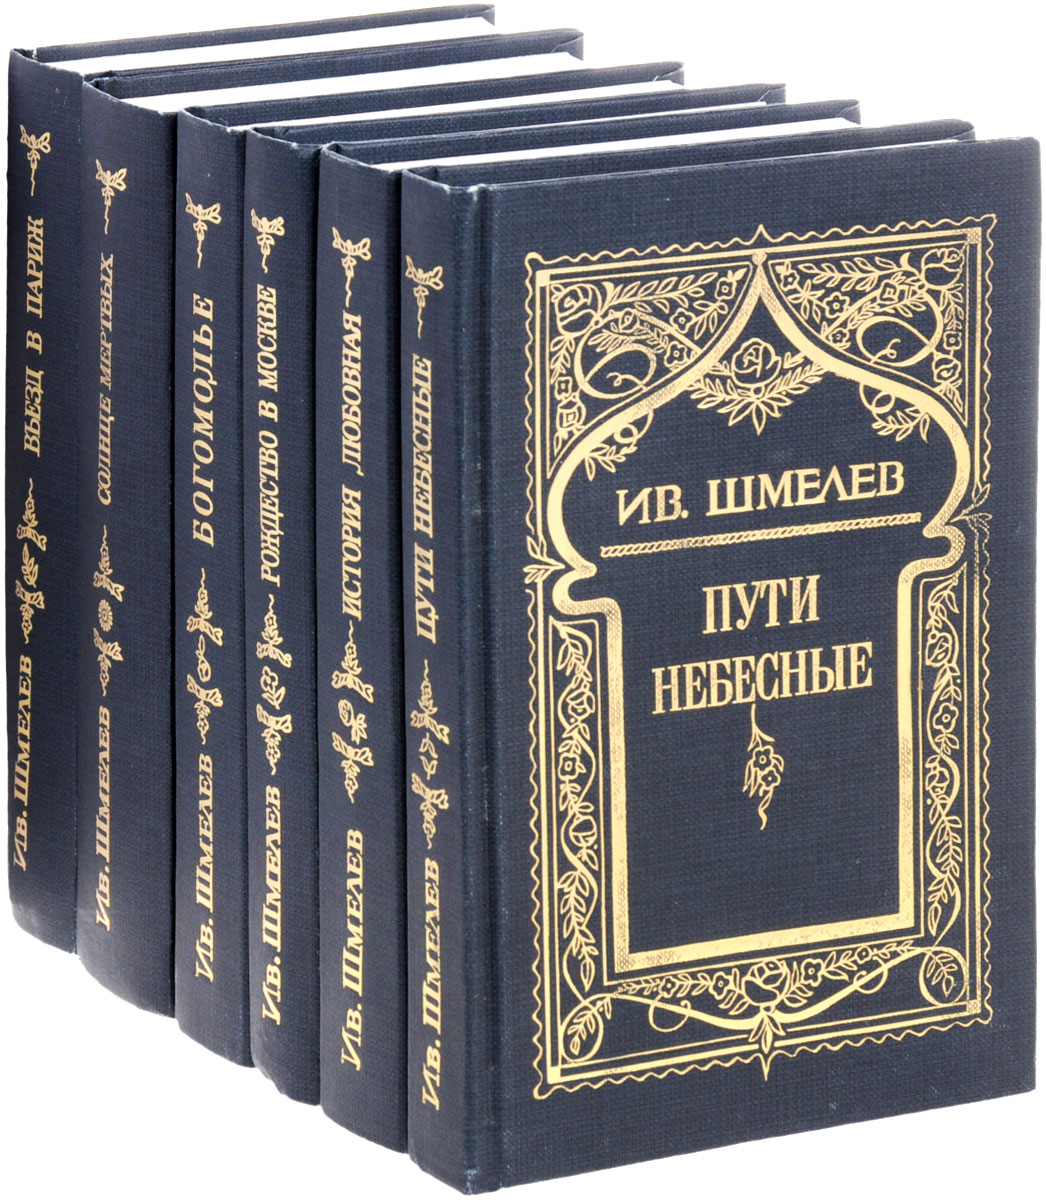 Ив. Шмелев. Собрание сочинений в 5 томах + дополнительный том (комплект из 6 книг)